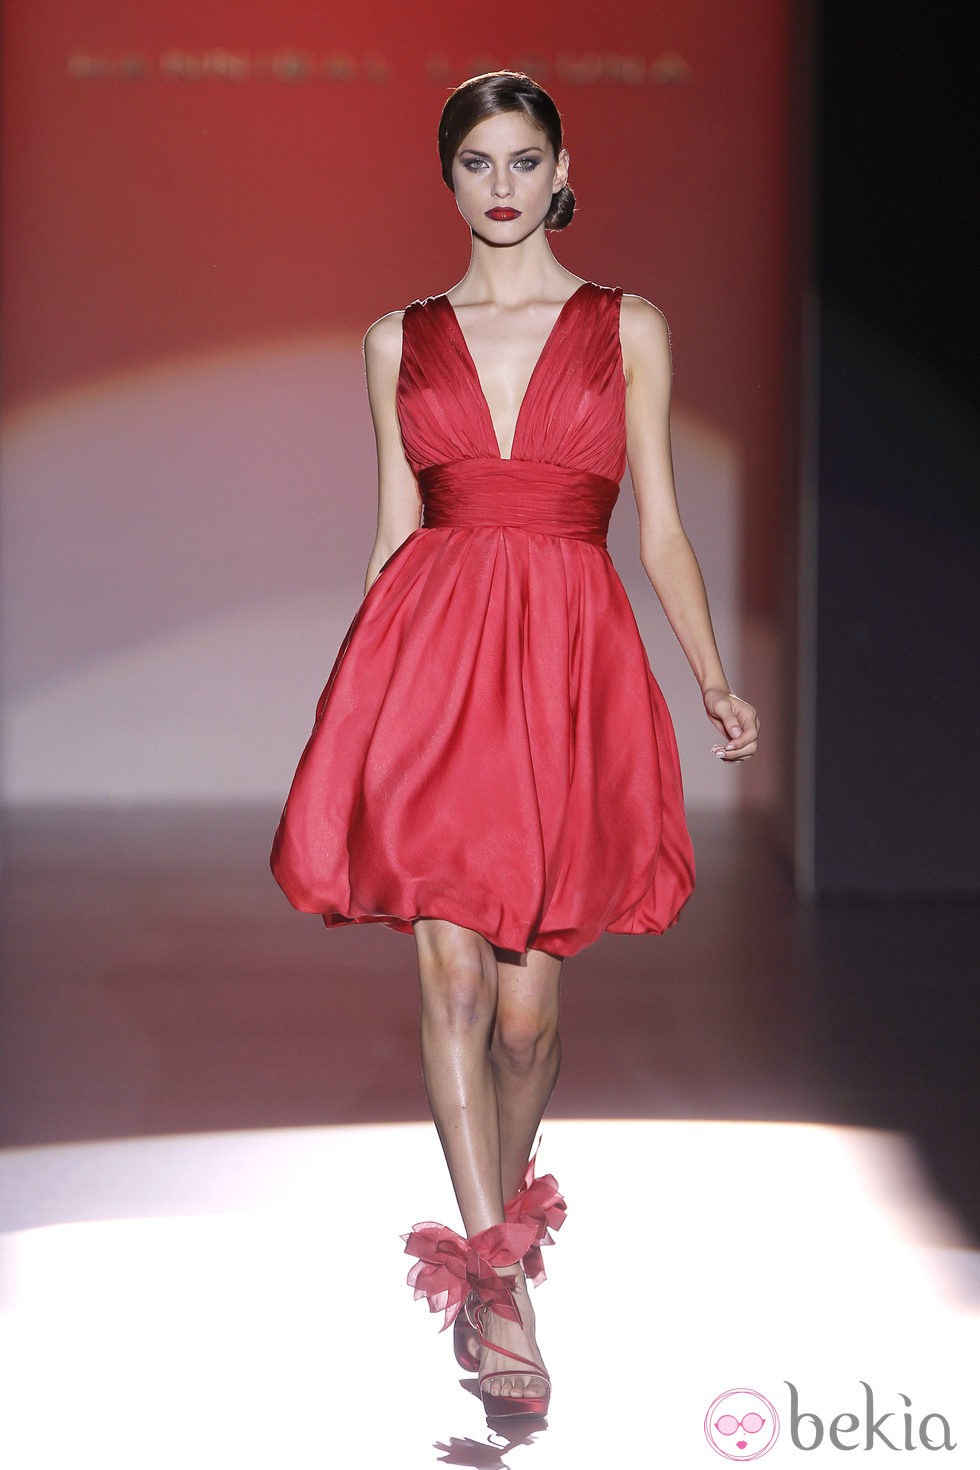 Vestido rojo con falda abullonada de Hannibal Laguna en Cibeles, colección primavera de 2012